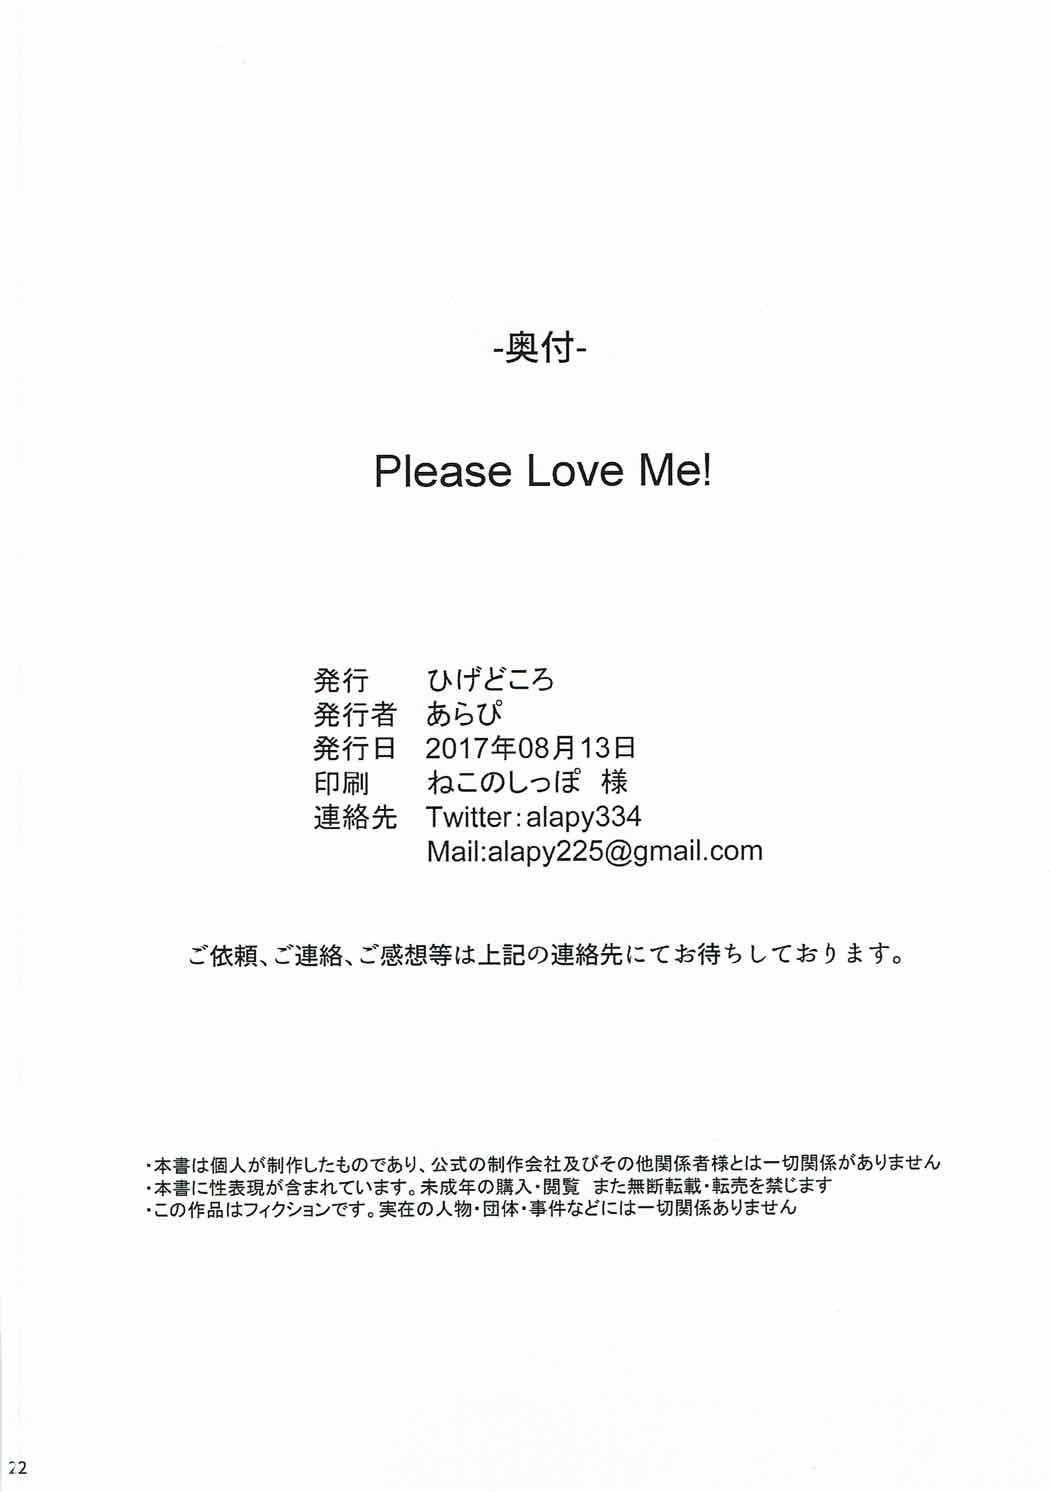 Please Love Me! 19